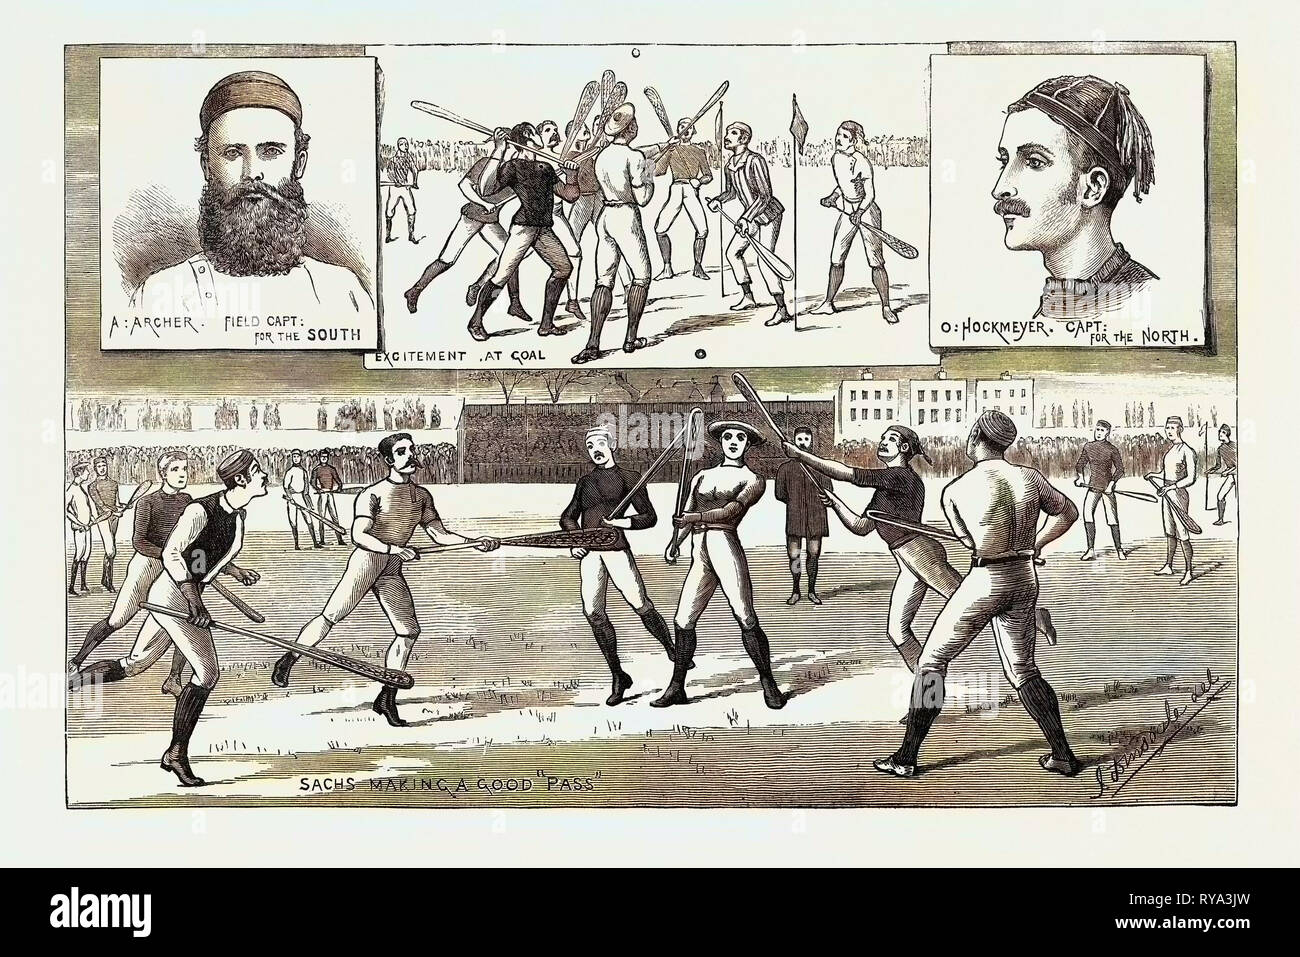 La Crosse match disputato lo scorso sabato a Kennington Oval, dall'Inghilterra del Nord contro Sud, 1883 Foto Stock